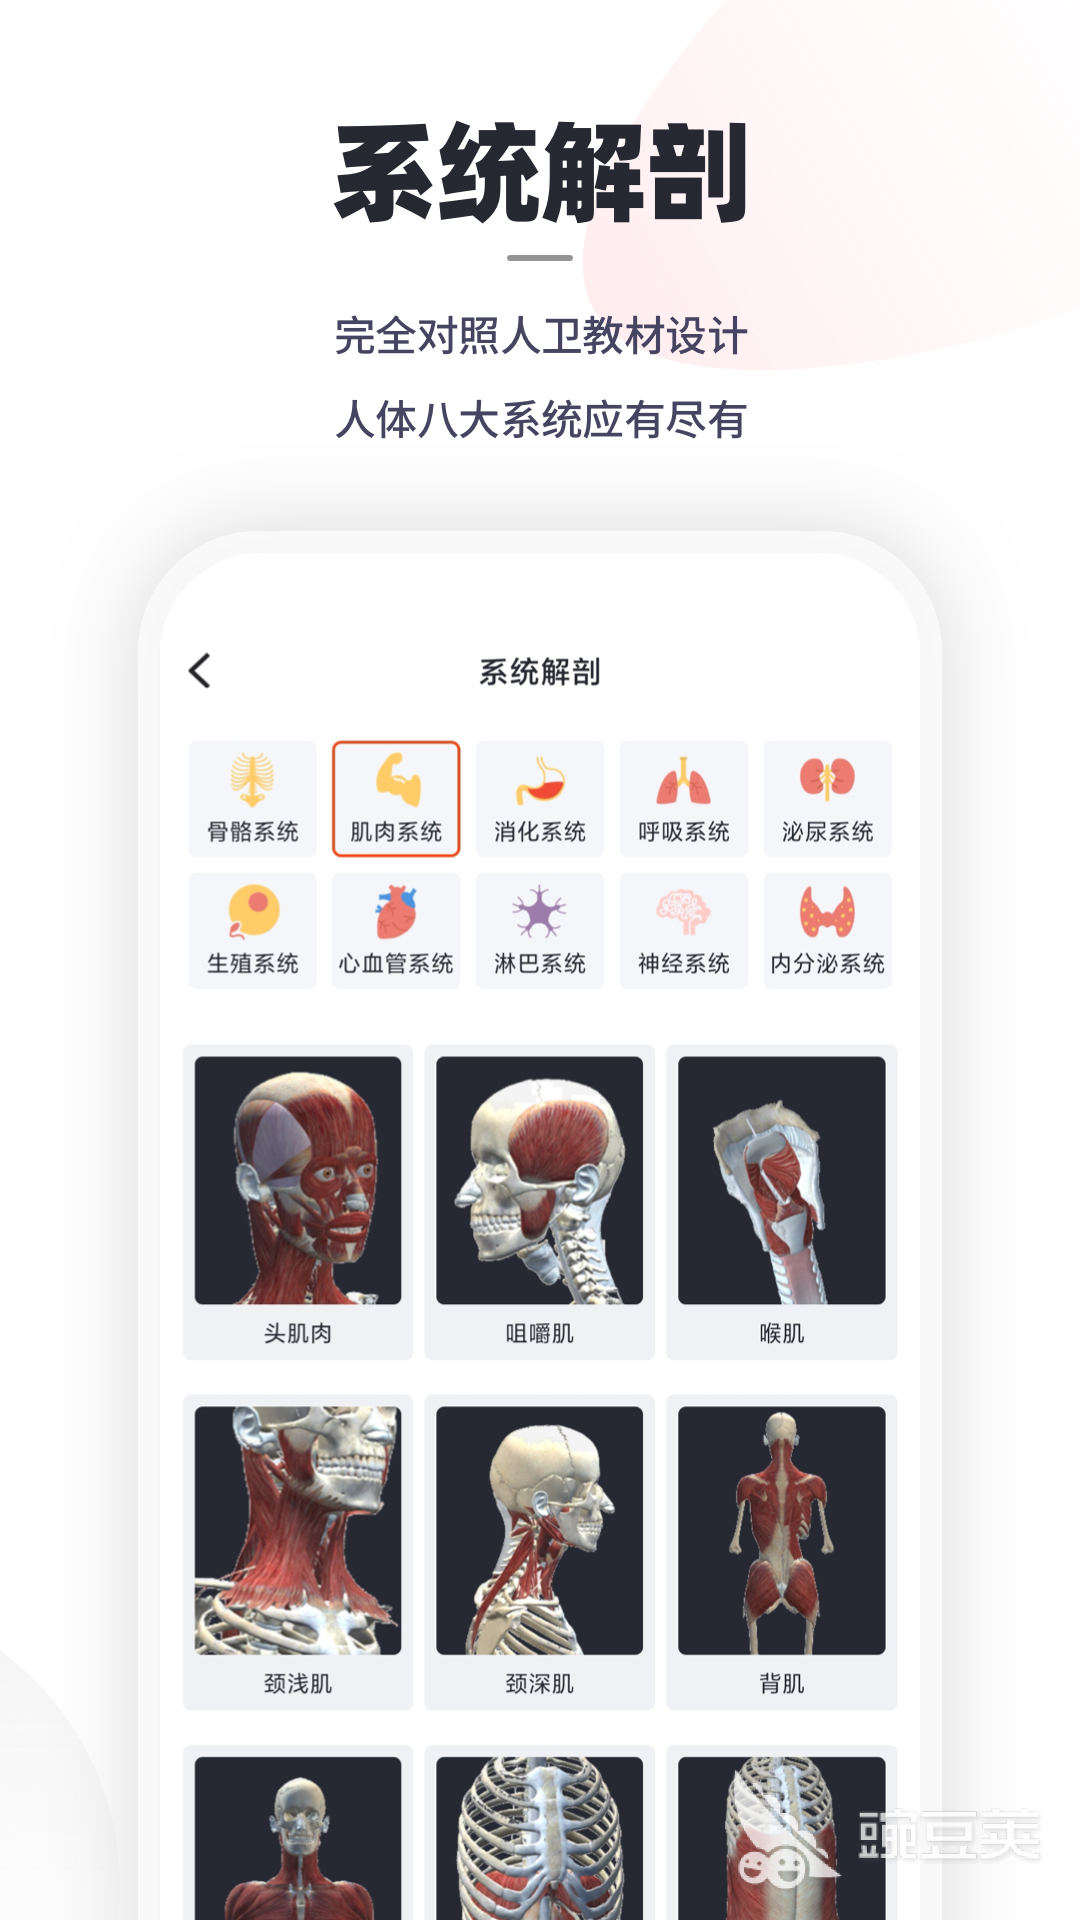 2020人体解剖学图谱app下载大全 好用的人体解剖学图谱app有哪些